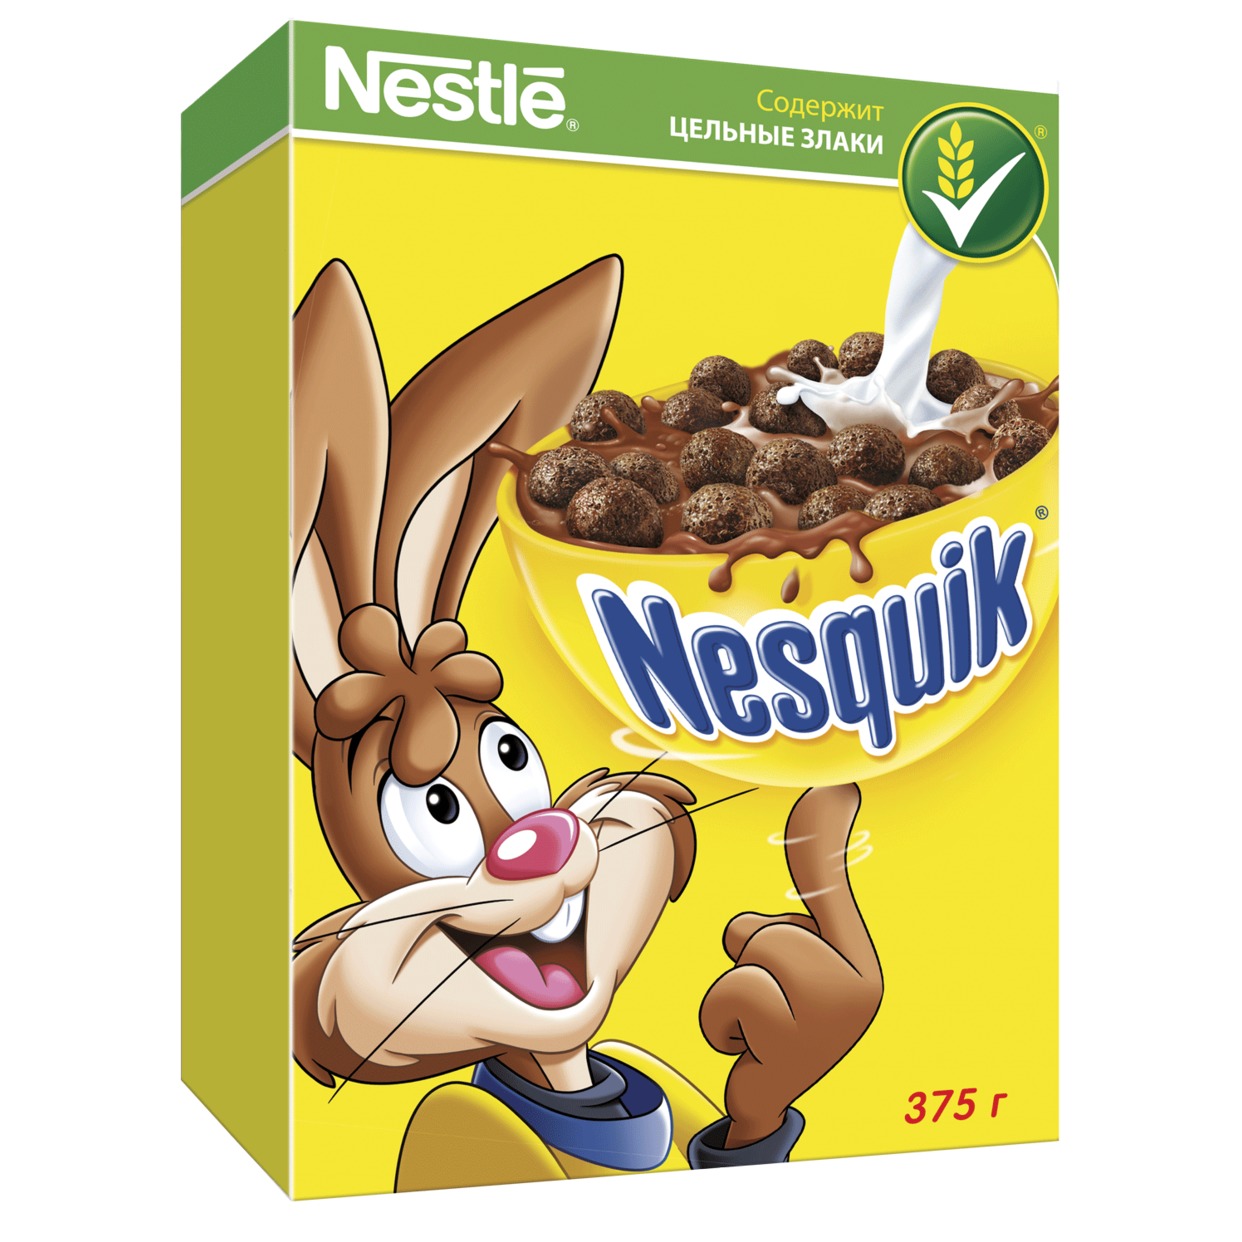 Готовый завтрак Nesquik, шоколадный, Nestle,  375 г по акции в Пятерочке